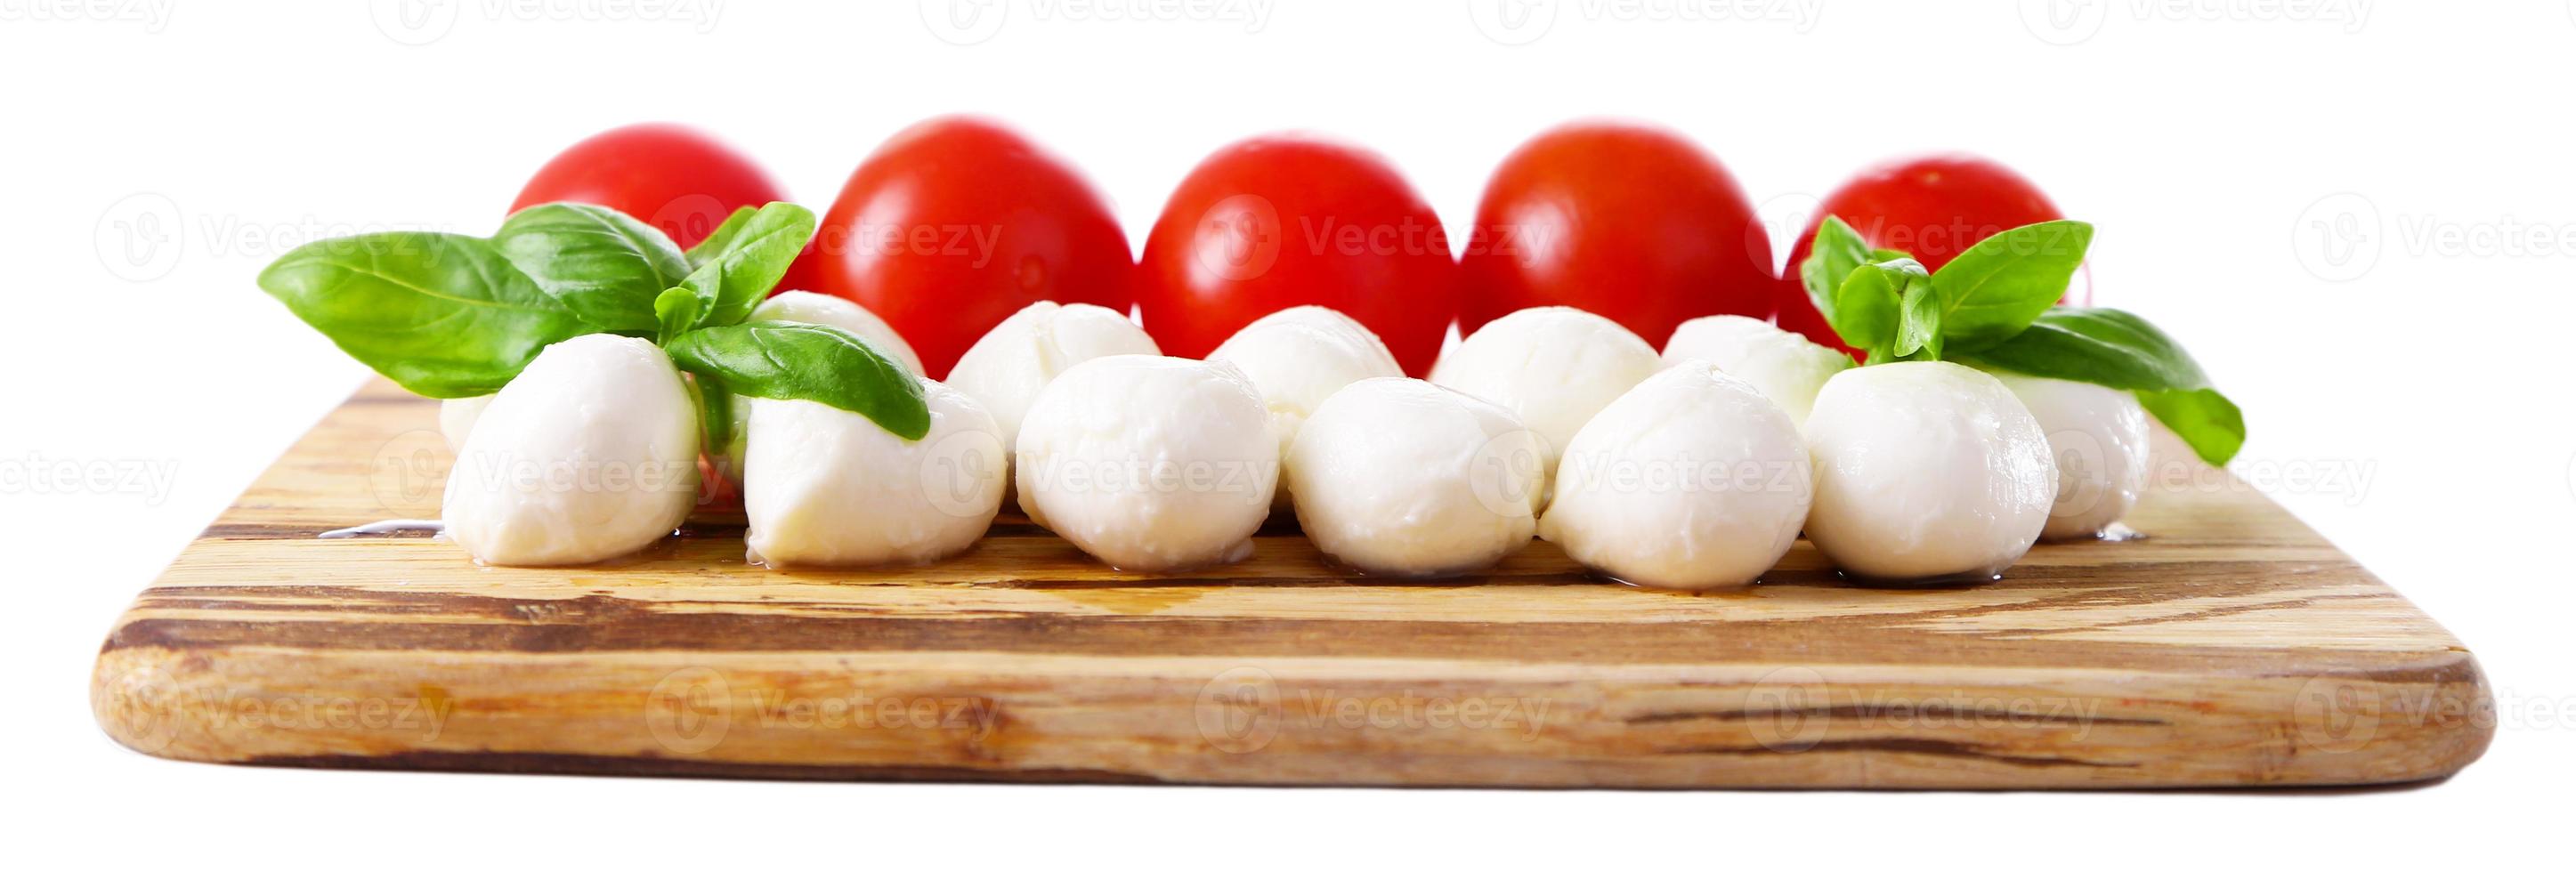 savoureuses boules de fromage mozzarella au basilic et aux tomates rouges photo